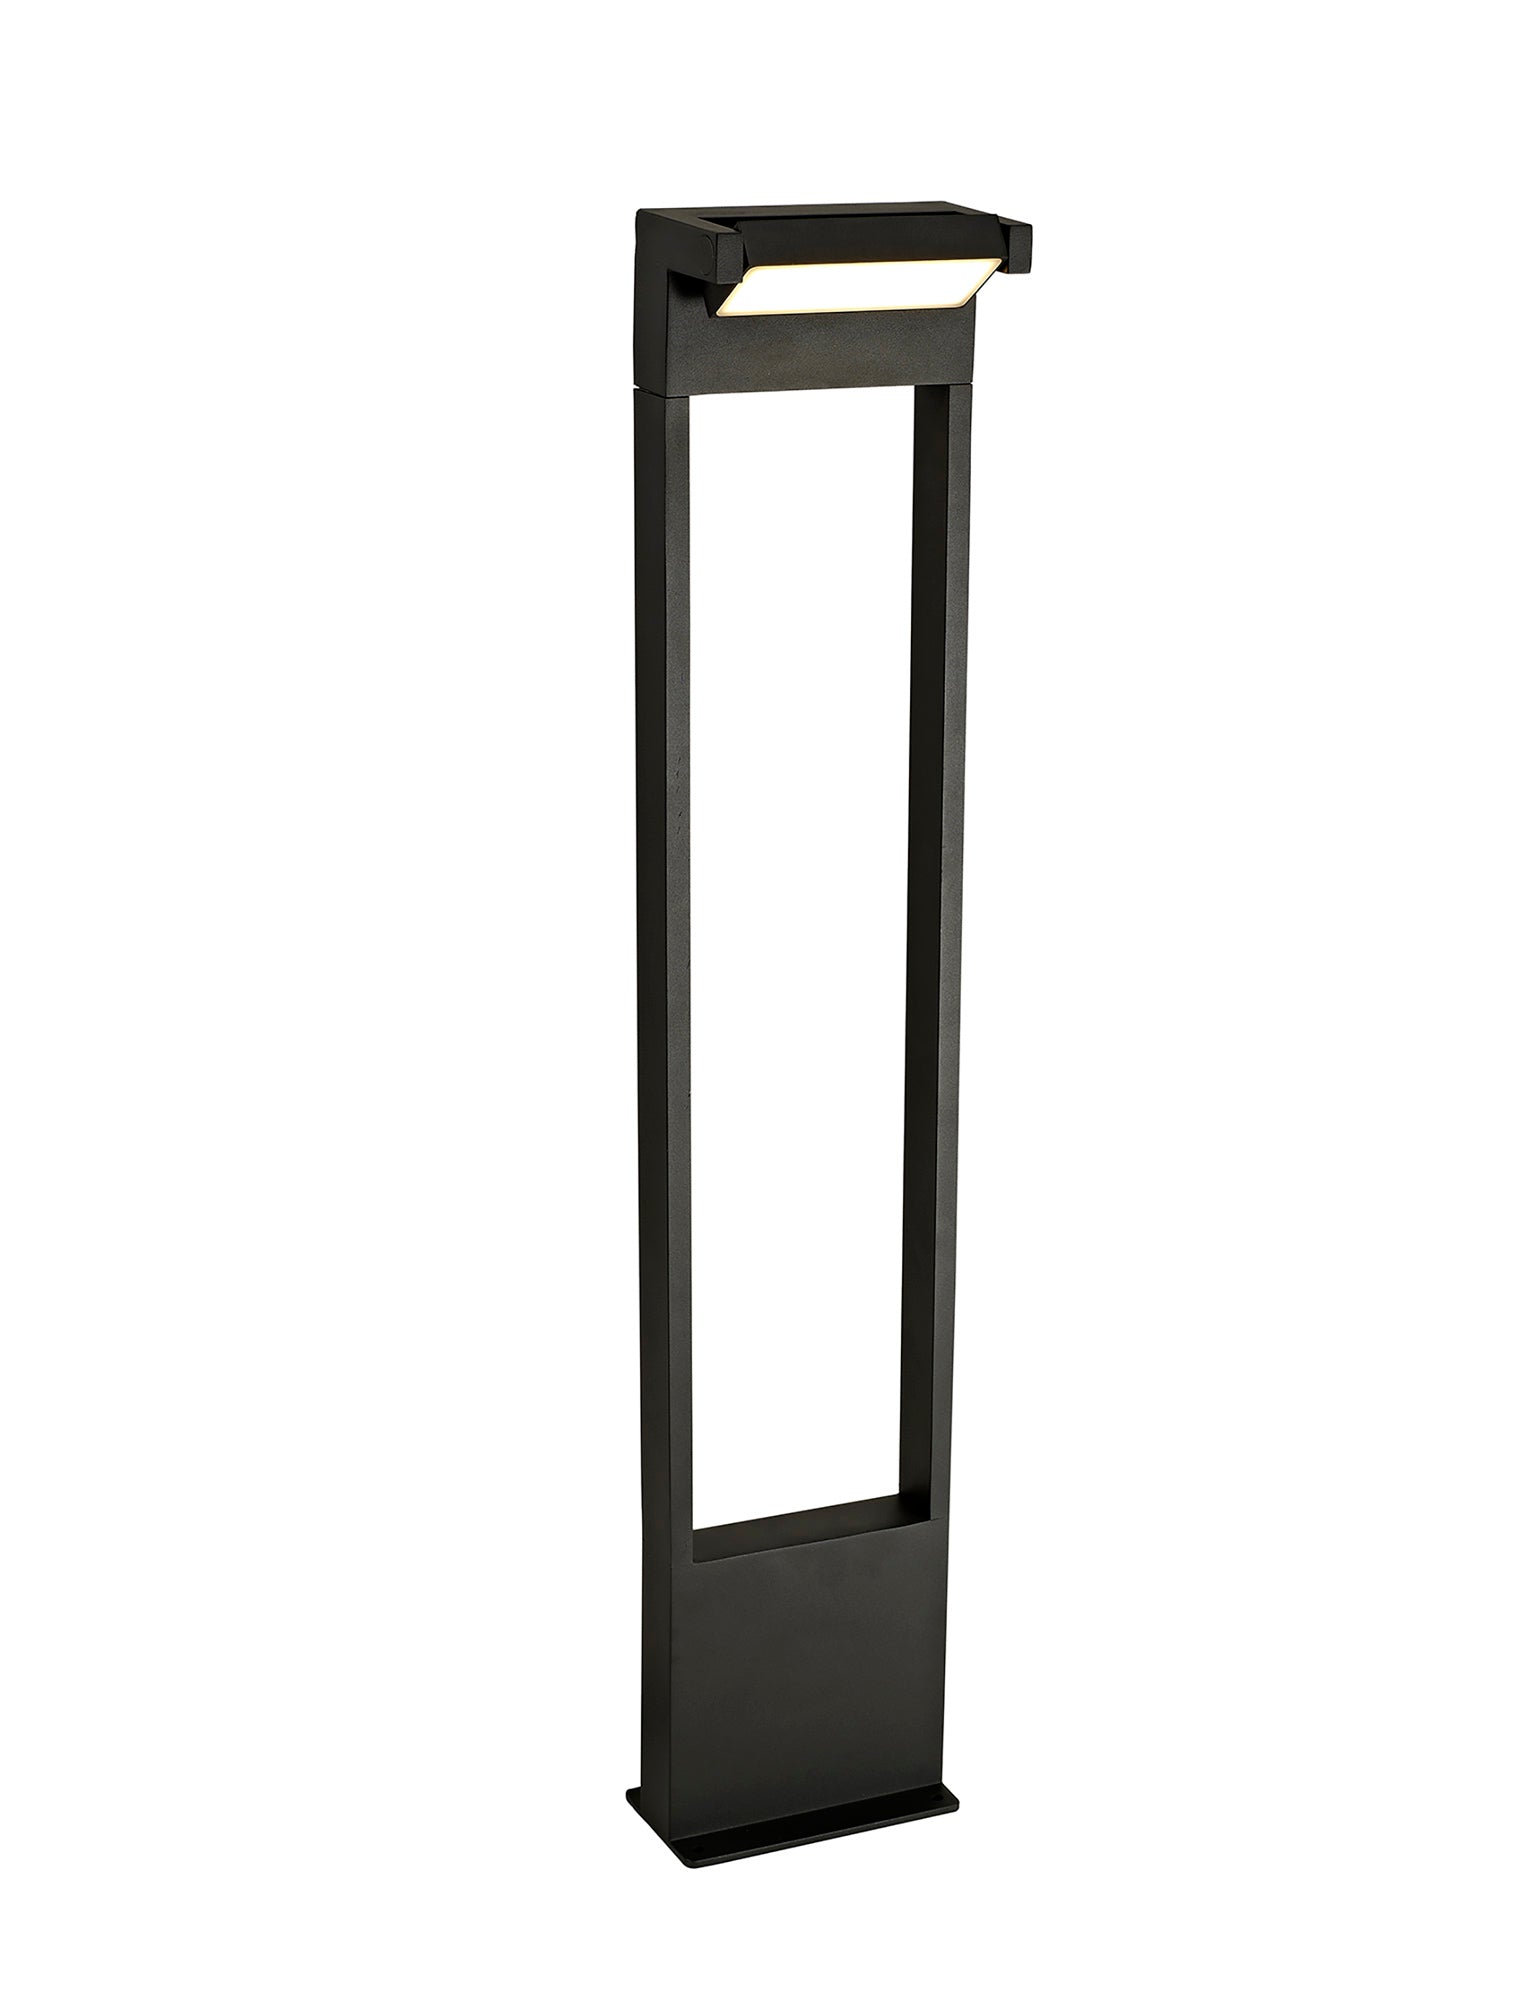 Logan Tall Post, 1 x 10W LED, 3000K, 720lm, IP54, Graphite Black, 3yrs Warranty